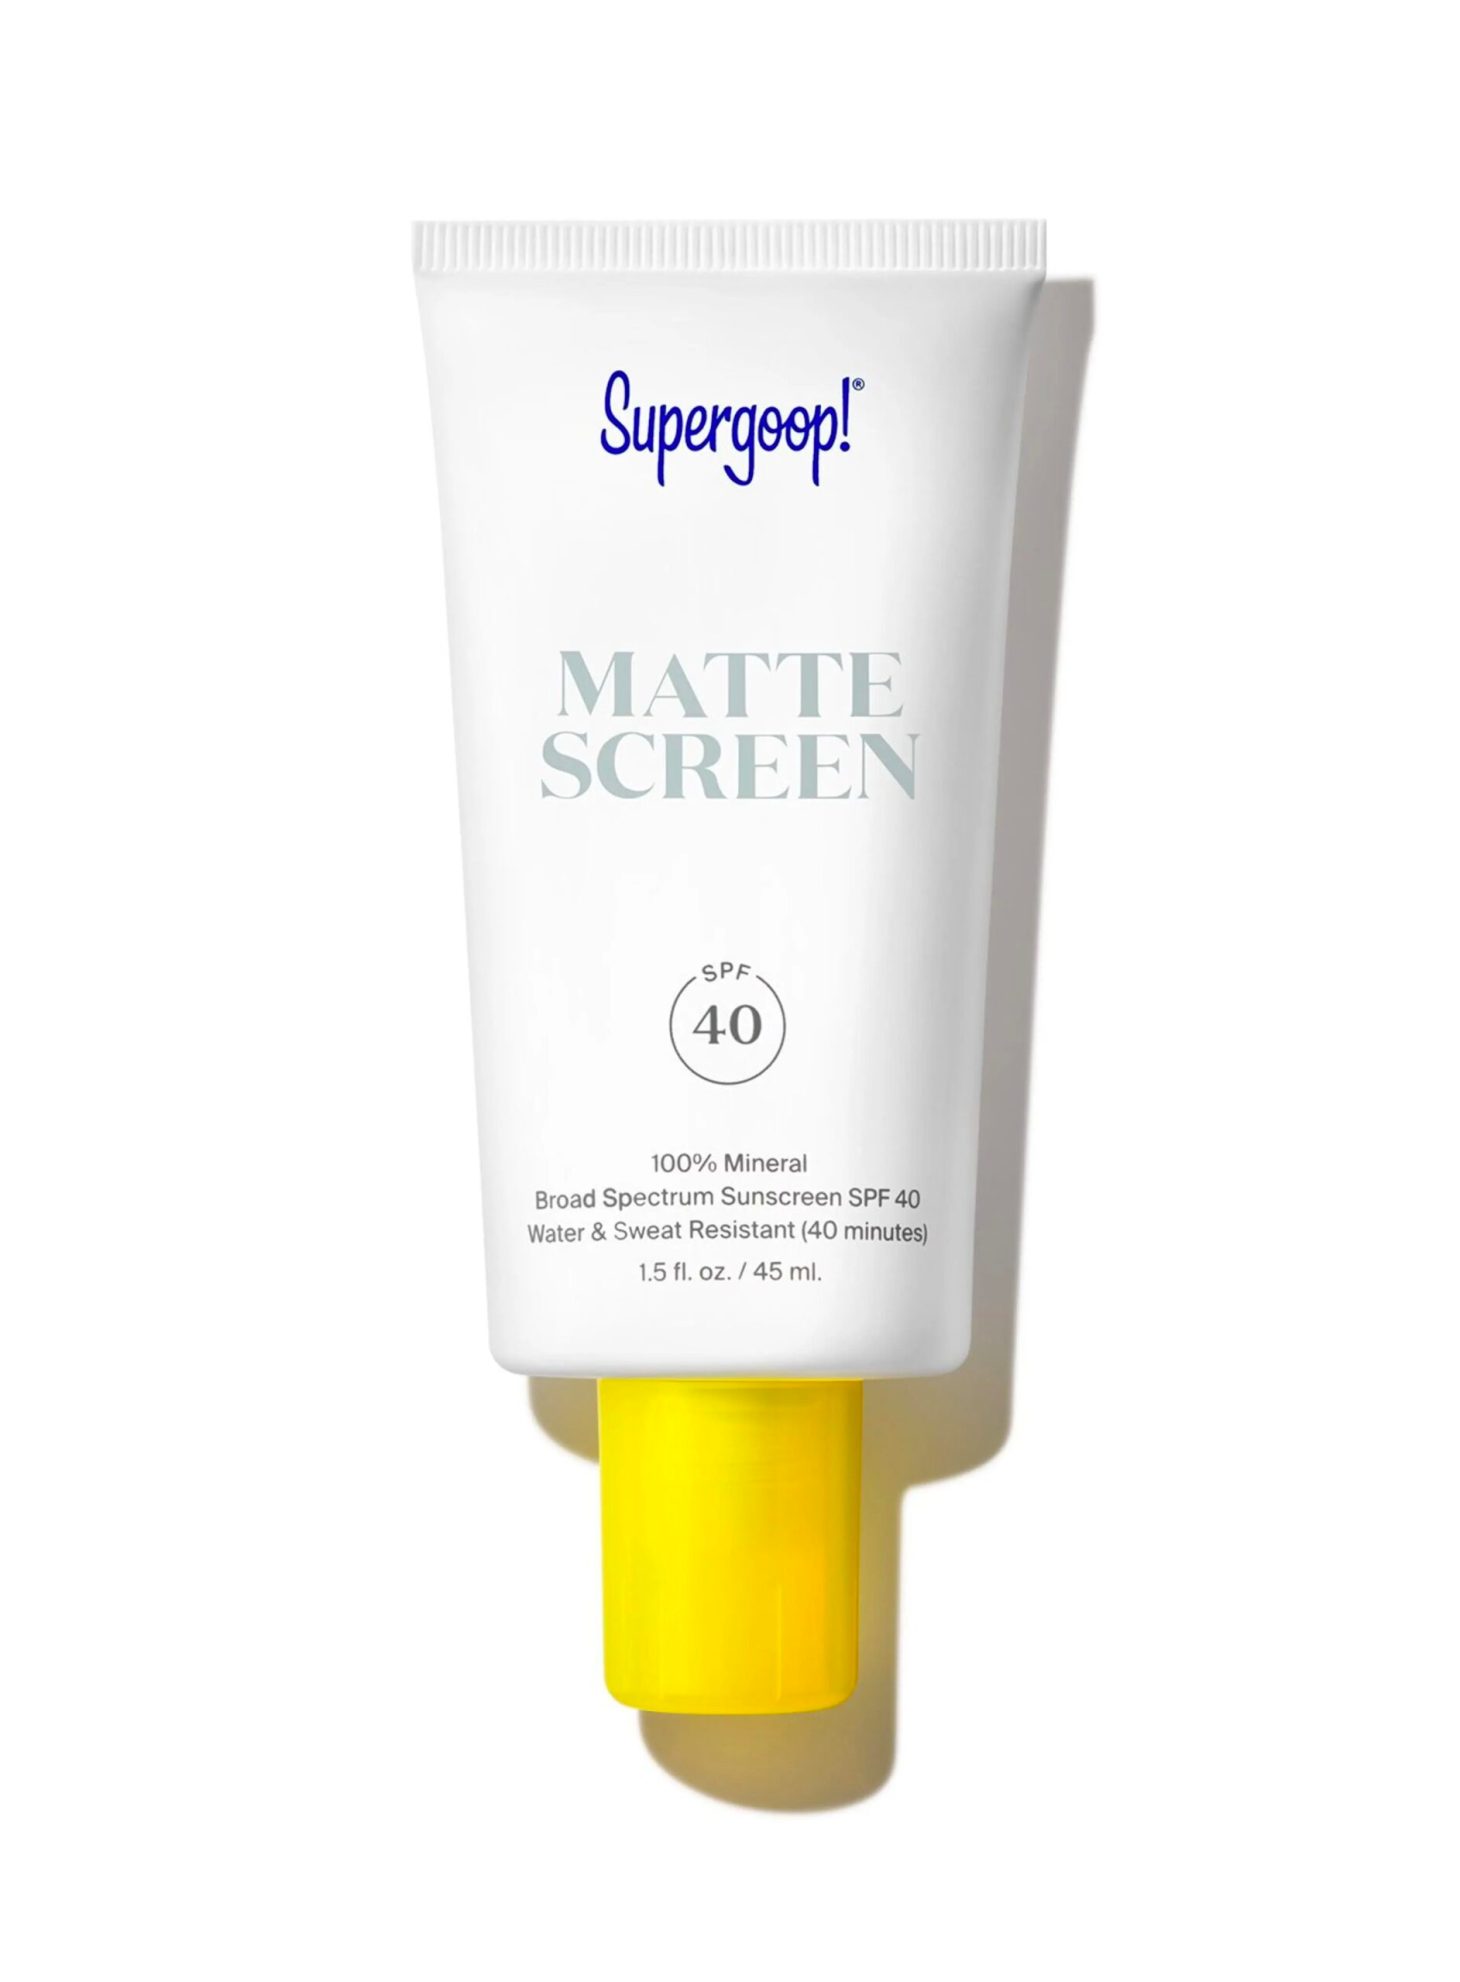 Supergoop, Mattescreen Sunscreen SPF 40, sunscreens for acne prone skin